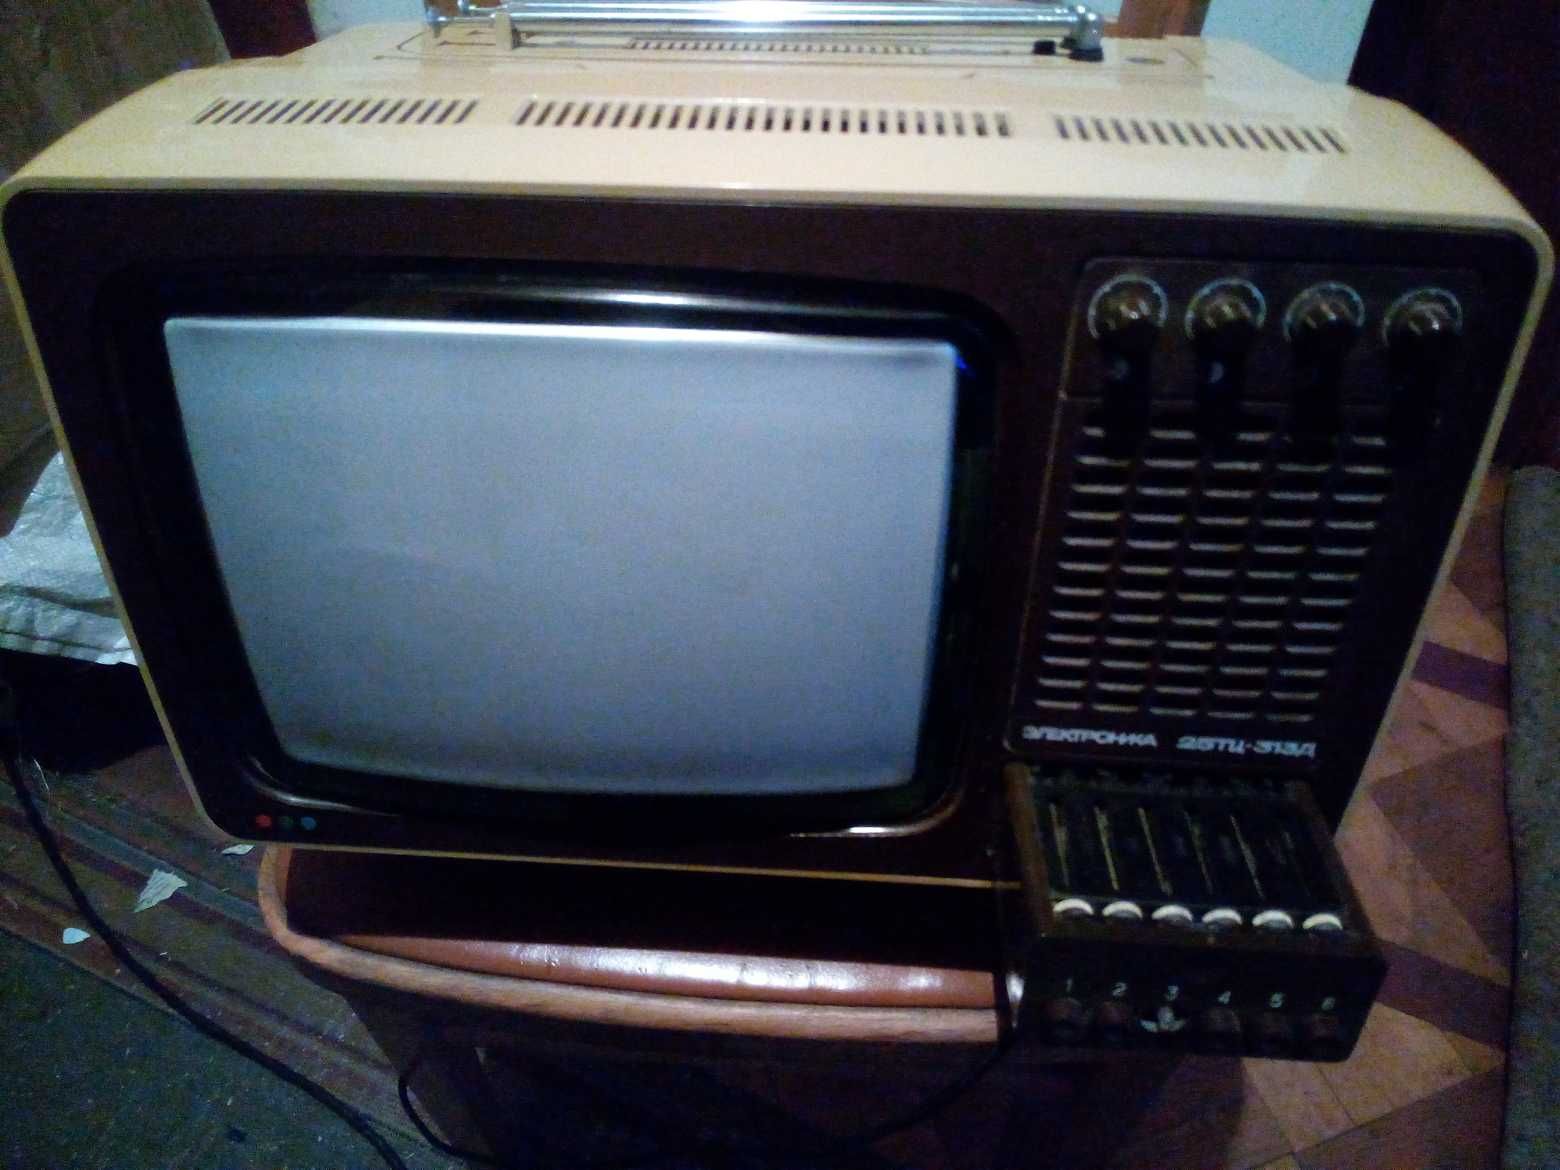 Продам кольоровий ТВ"Електроніка 25ТЦ-313 Д",радянського виробництва.